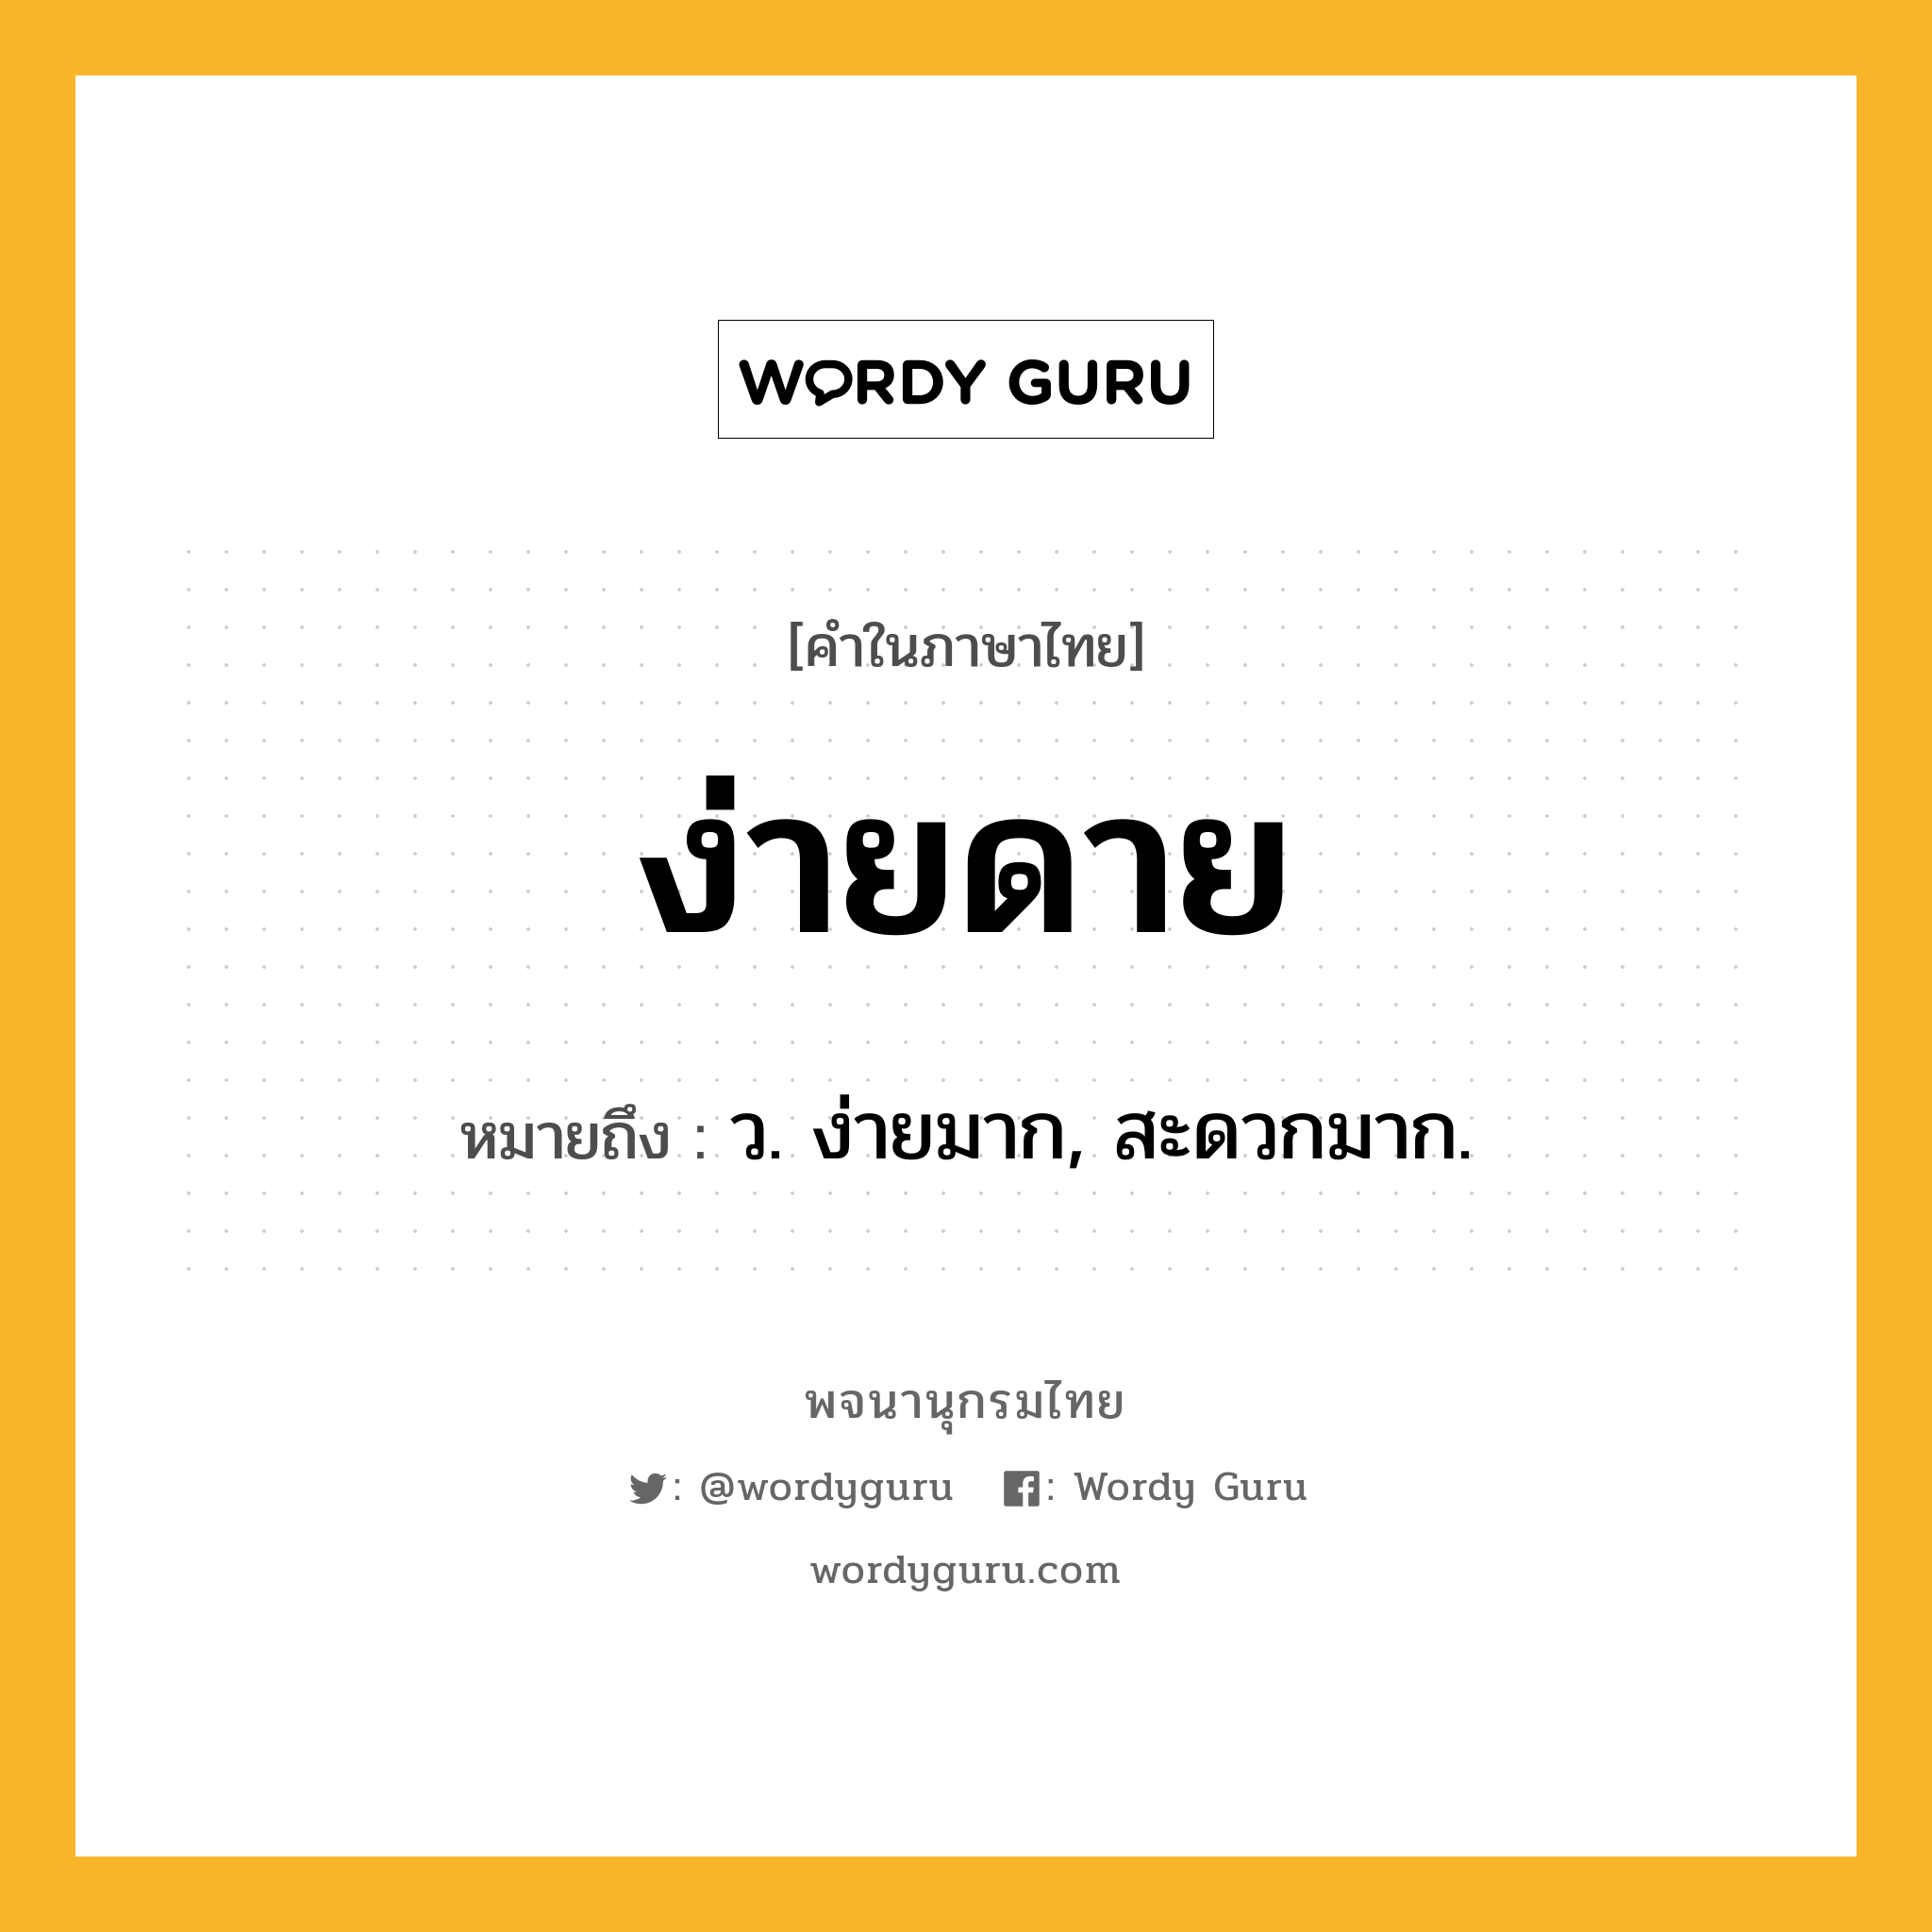 ง่ายดาย หมายถึงอะไร?, คำในภาษาไทย ง่ายดาย หมายถึง ว. ง่ายมาก, สะดวกมาก.